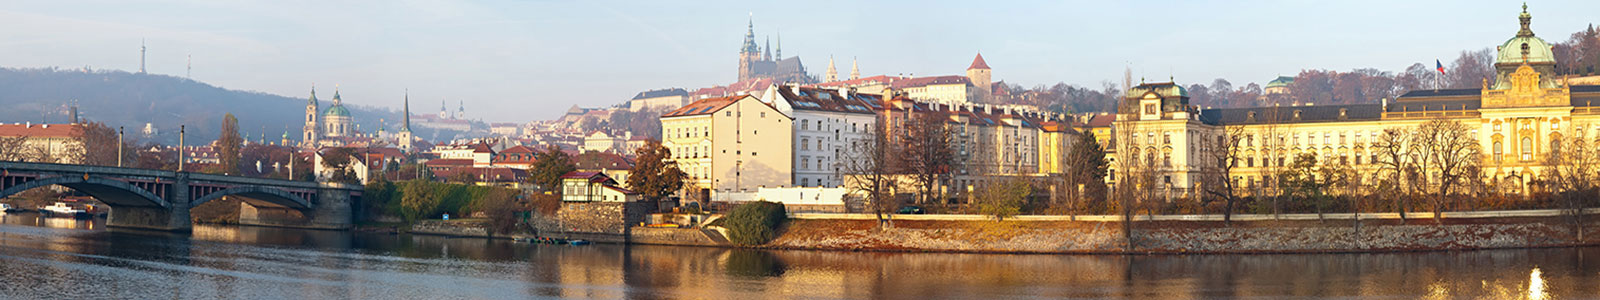 №1435 - Старинный город Прага, Чехия